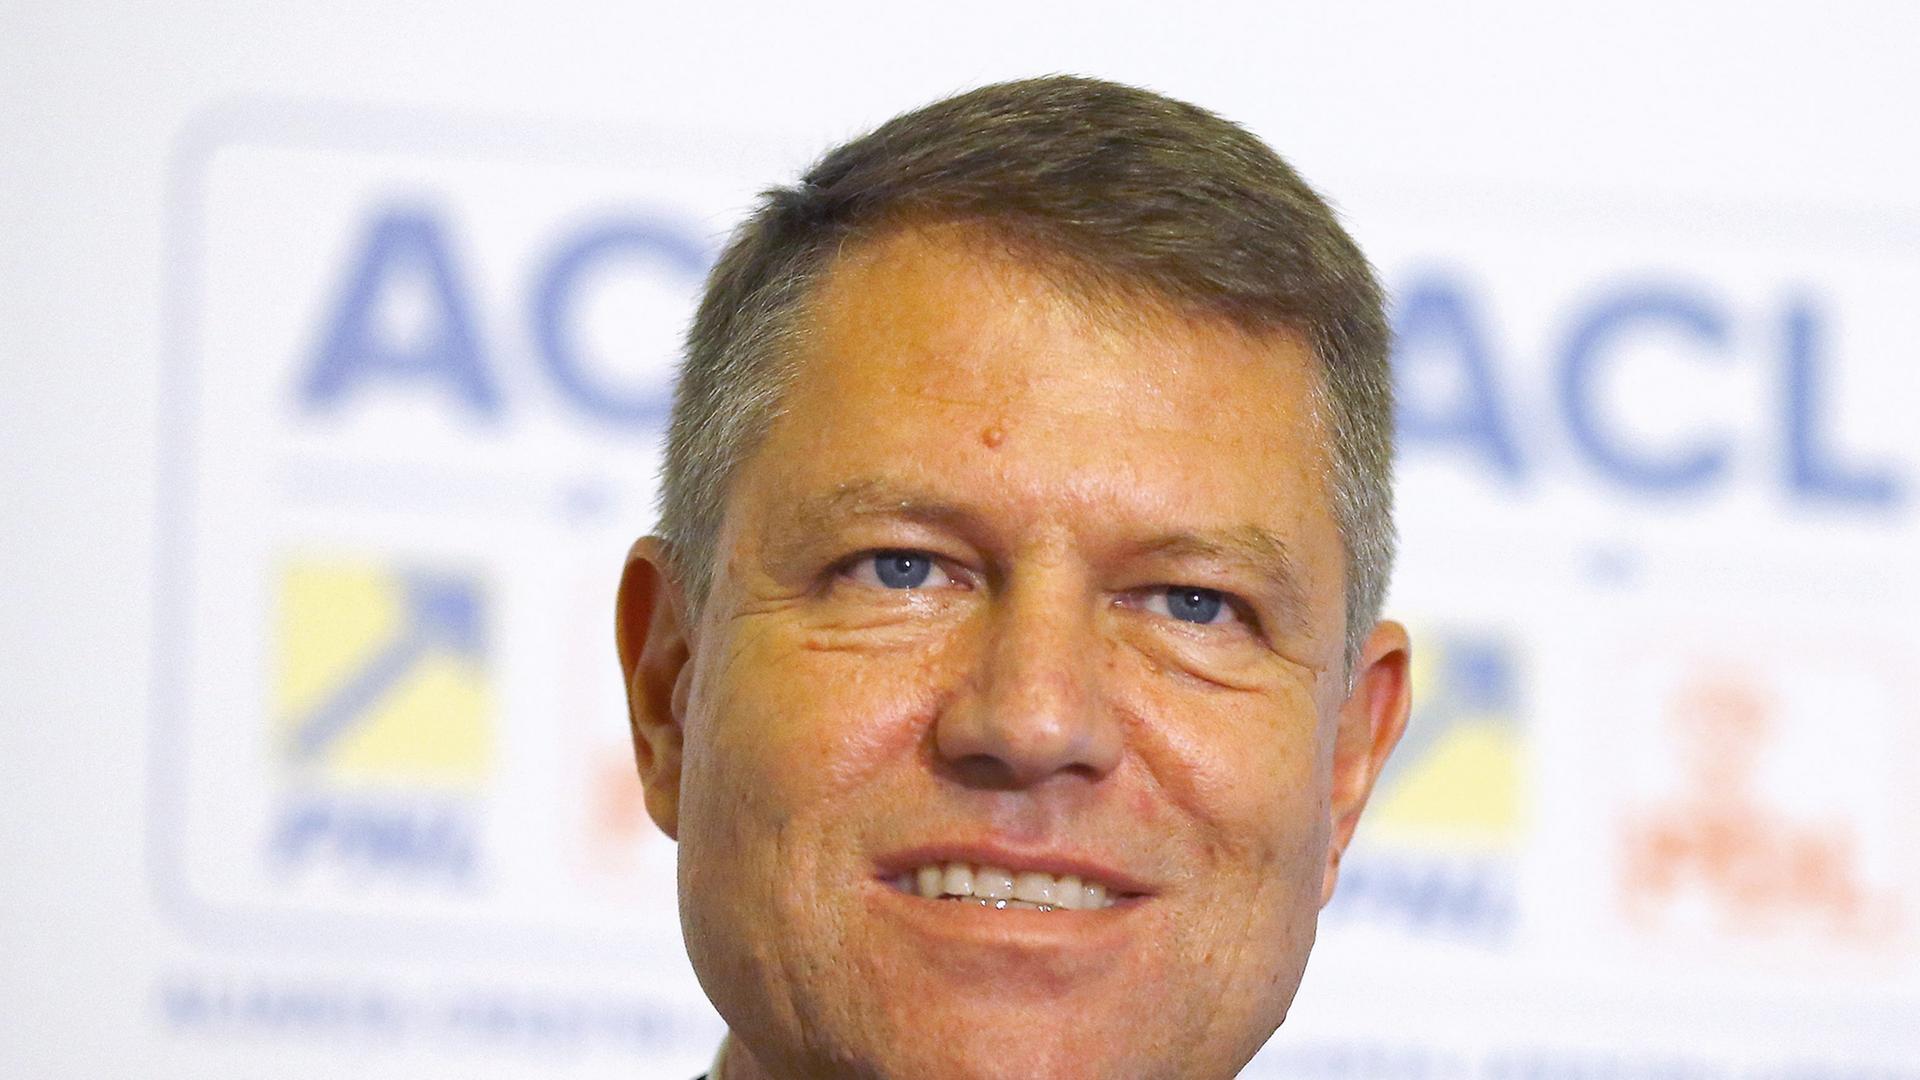 Klaus Johannis, Siebenbürger Sachse, ist neuer rumänischer Staatspräsident.